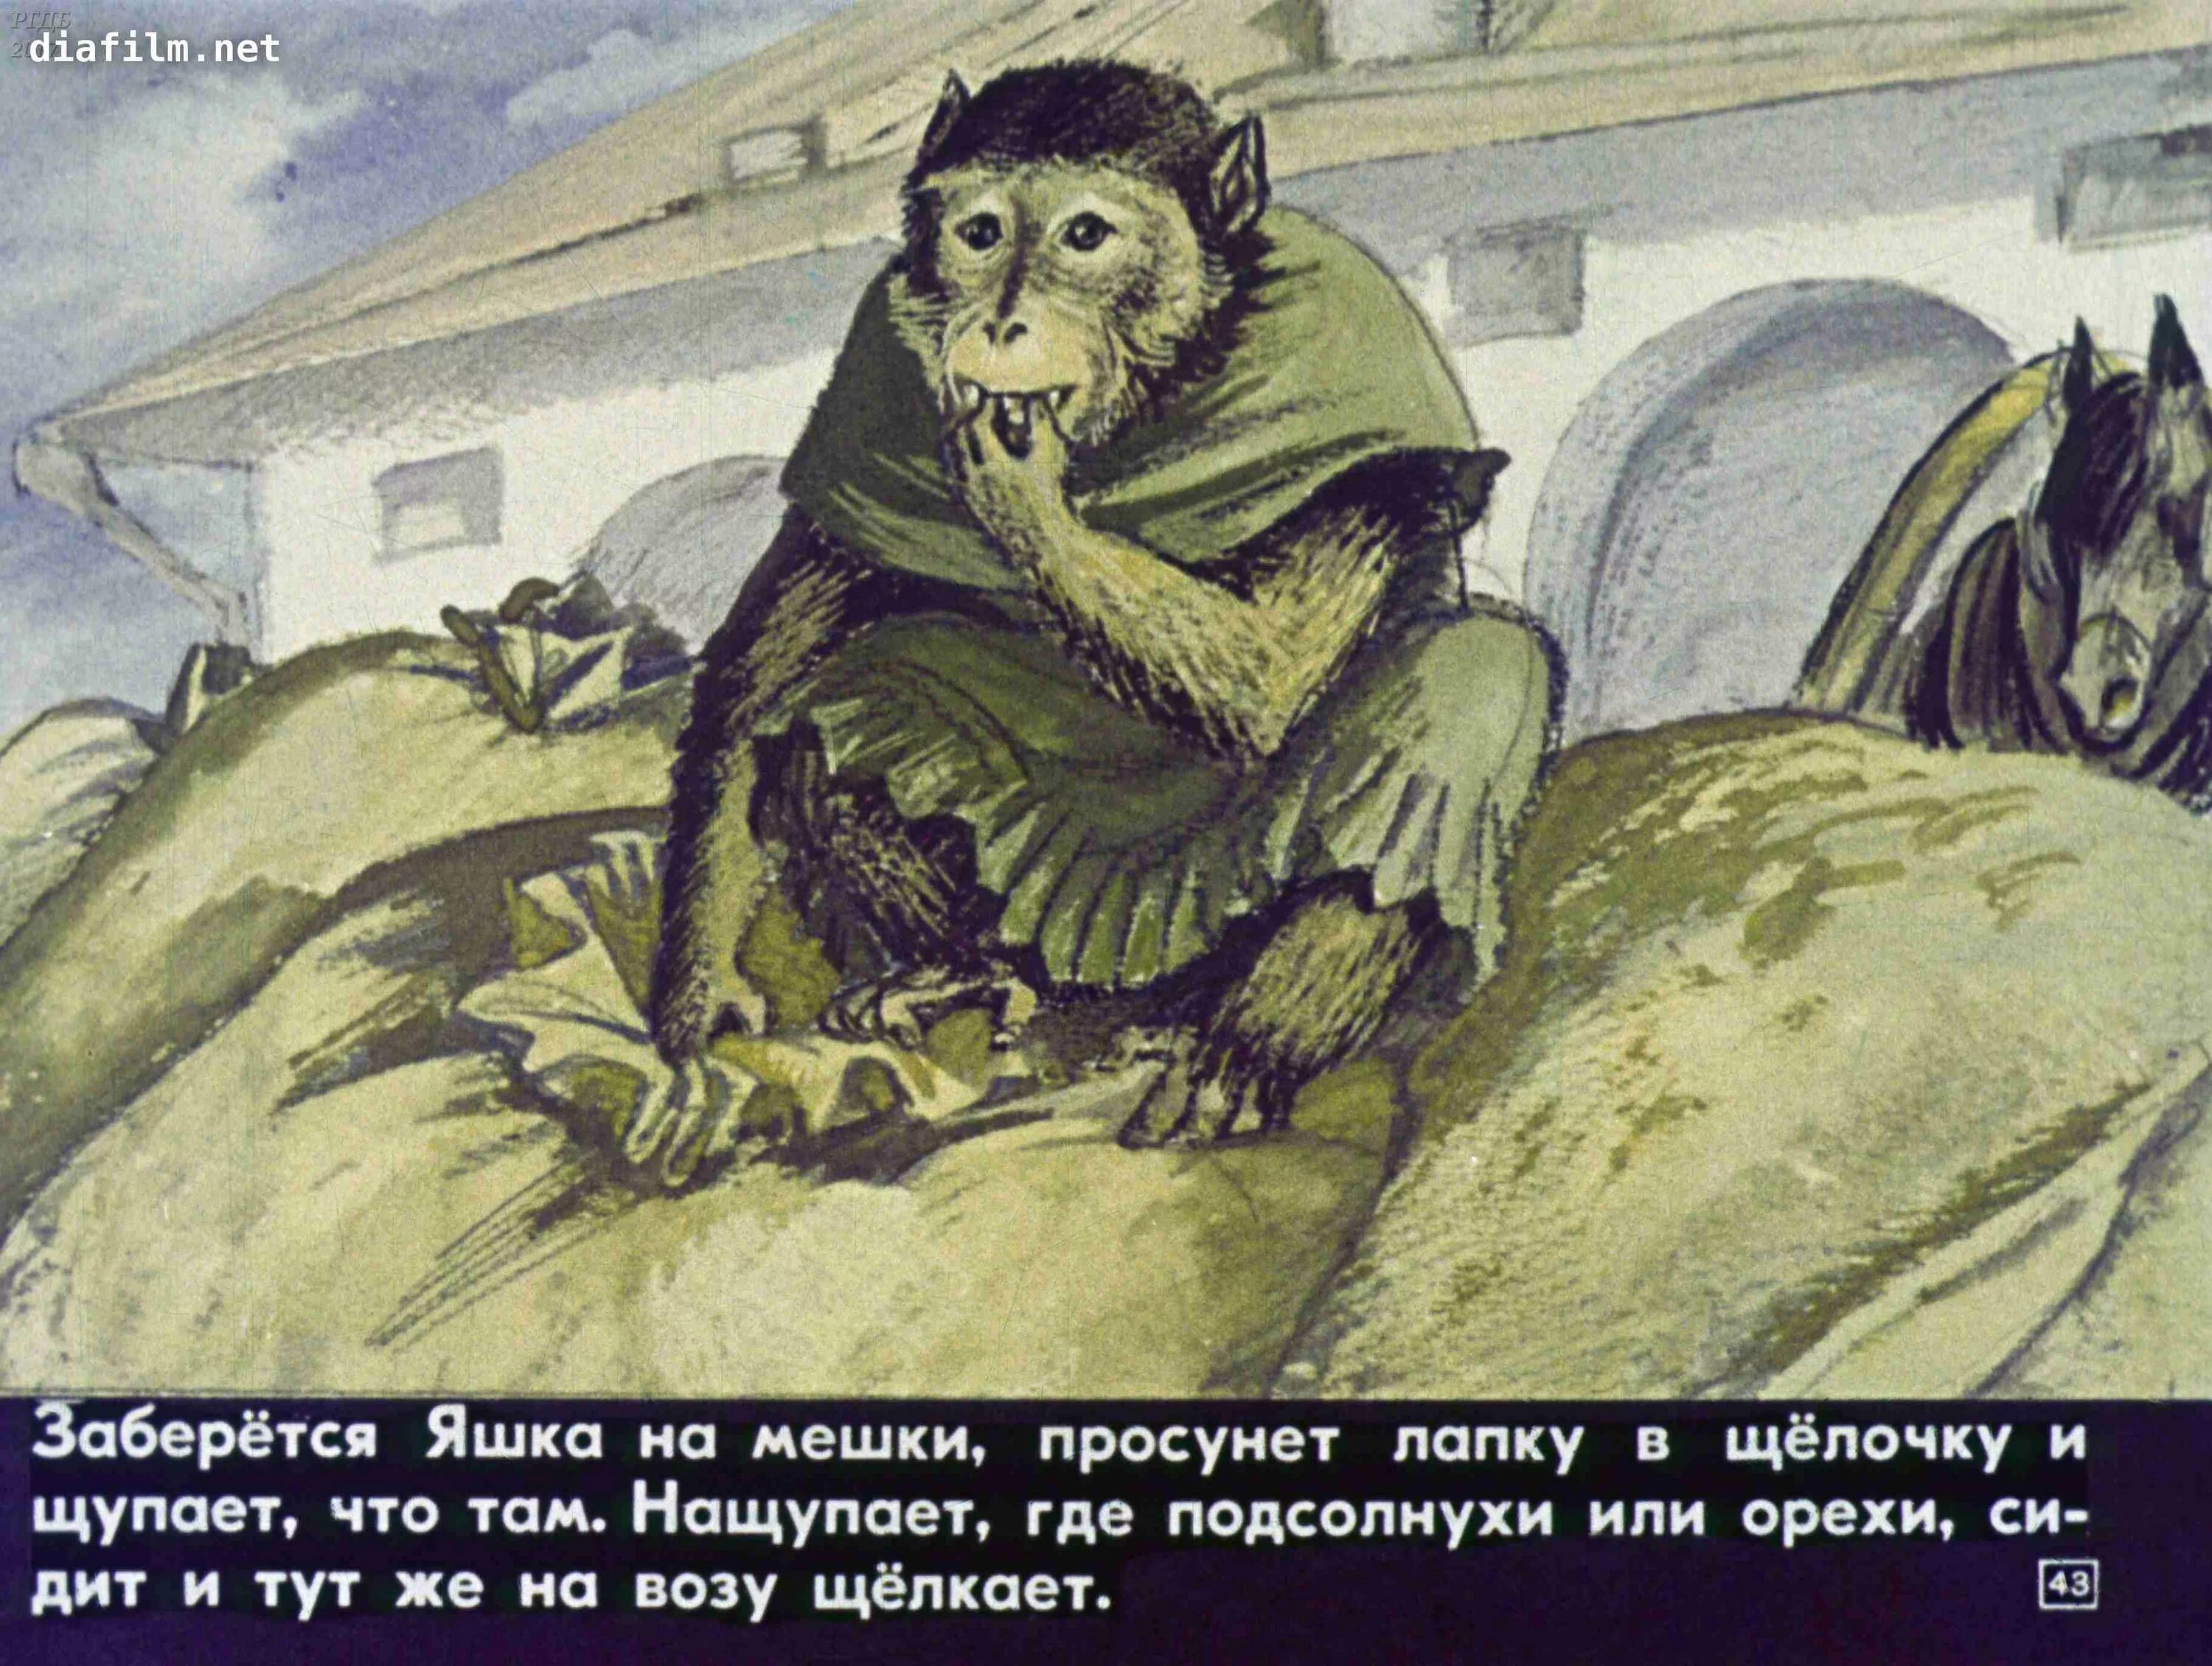 Иллюстрация к произведению б Житкова про обезьянку. Б Житков про обезьянку. Обезьяна из рассказа про обезьянку